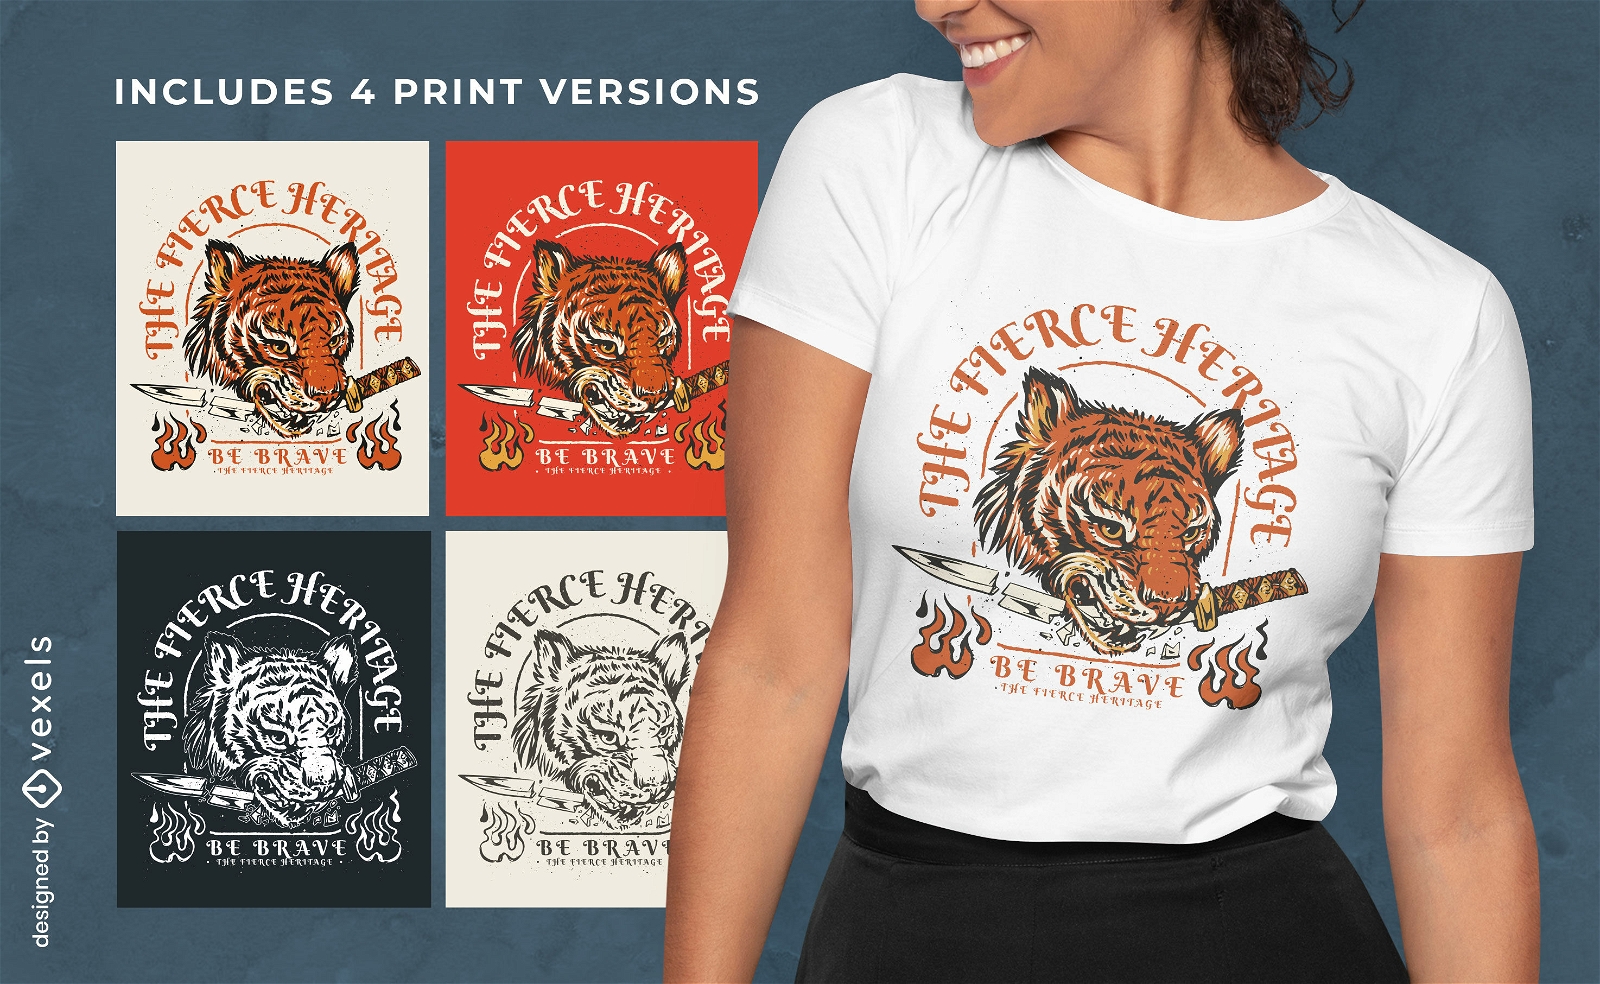 Tiger mit Messer-T-Shirt-Design in Farbvarianten